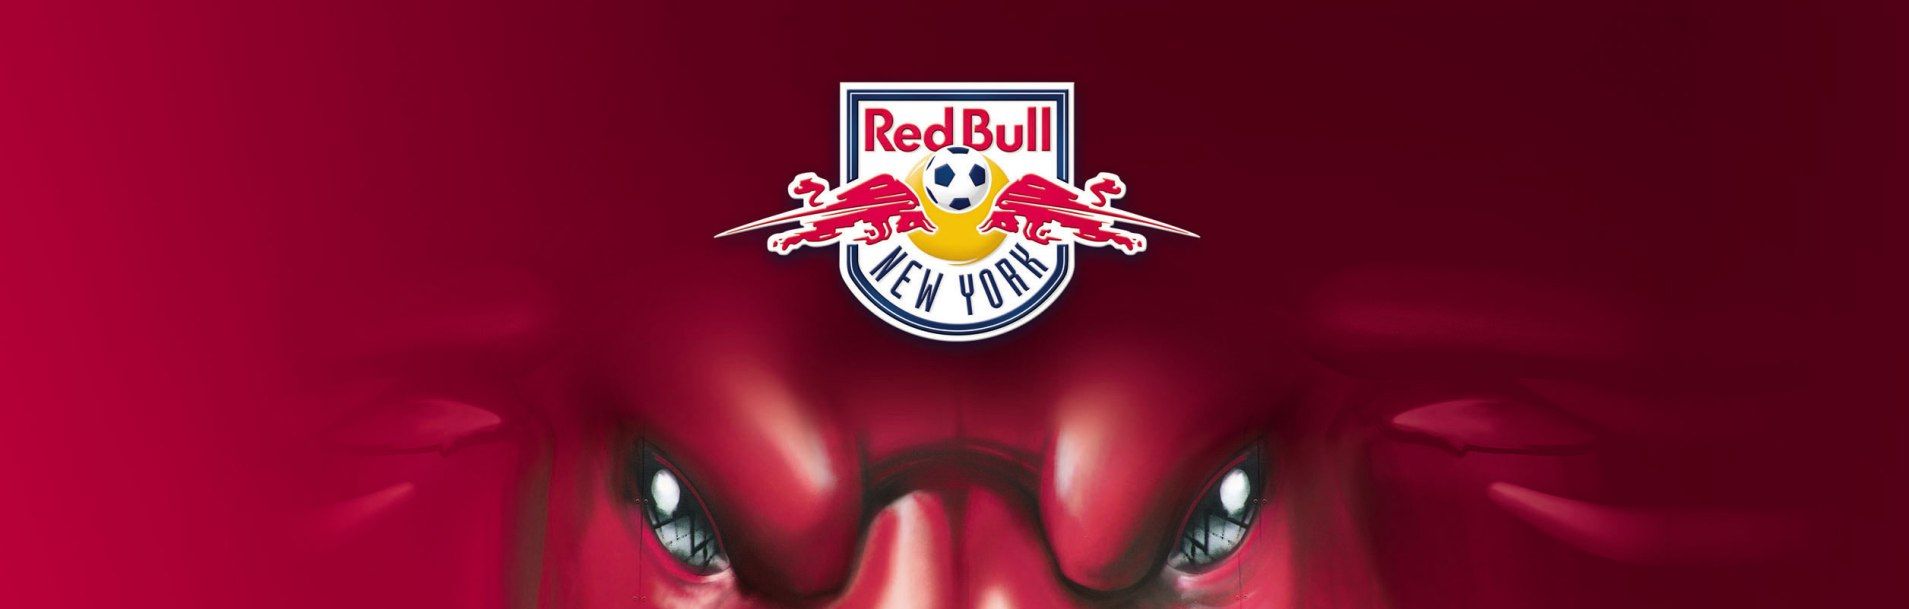 Red Bulls inician temporada 2014 | LA PASION POR EL FUTBOL